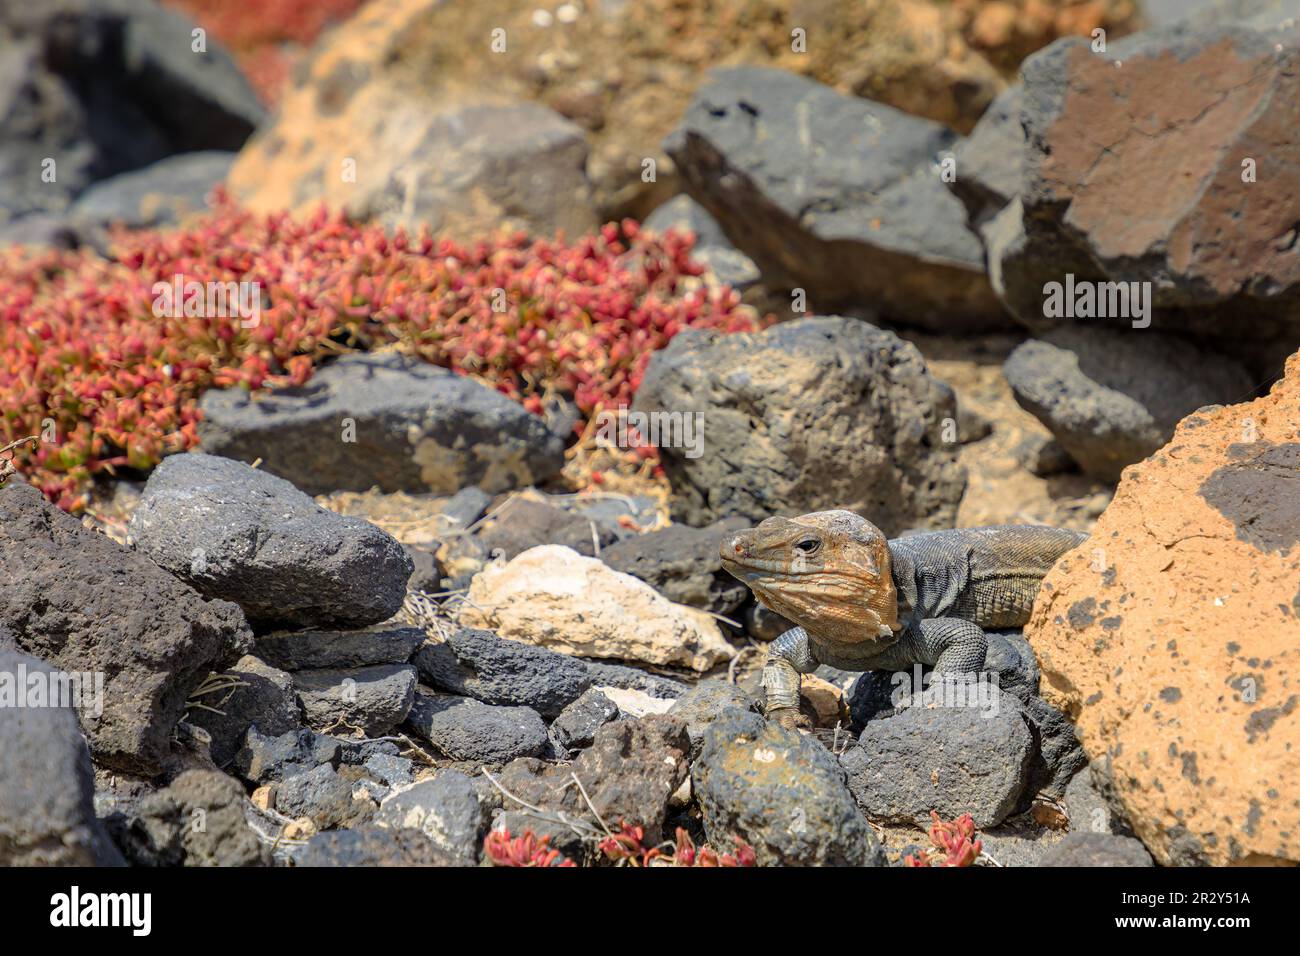 Gallotia stehlini ist eine große Eidechsenart, die nur auf Gran Canaria zu finden ist. Es hat einen ausgeprägten Look und ein Interessantes Verhalten, was es ausmacht Stockfoto